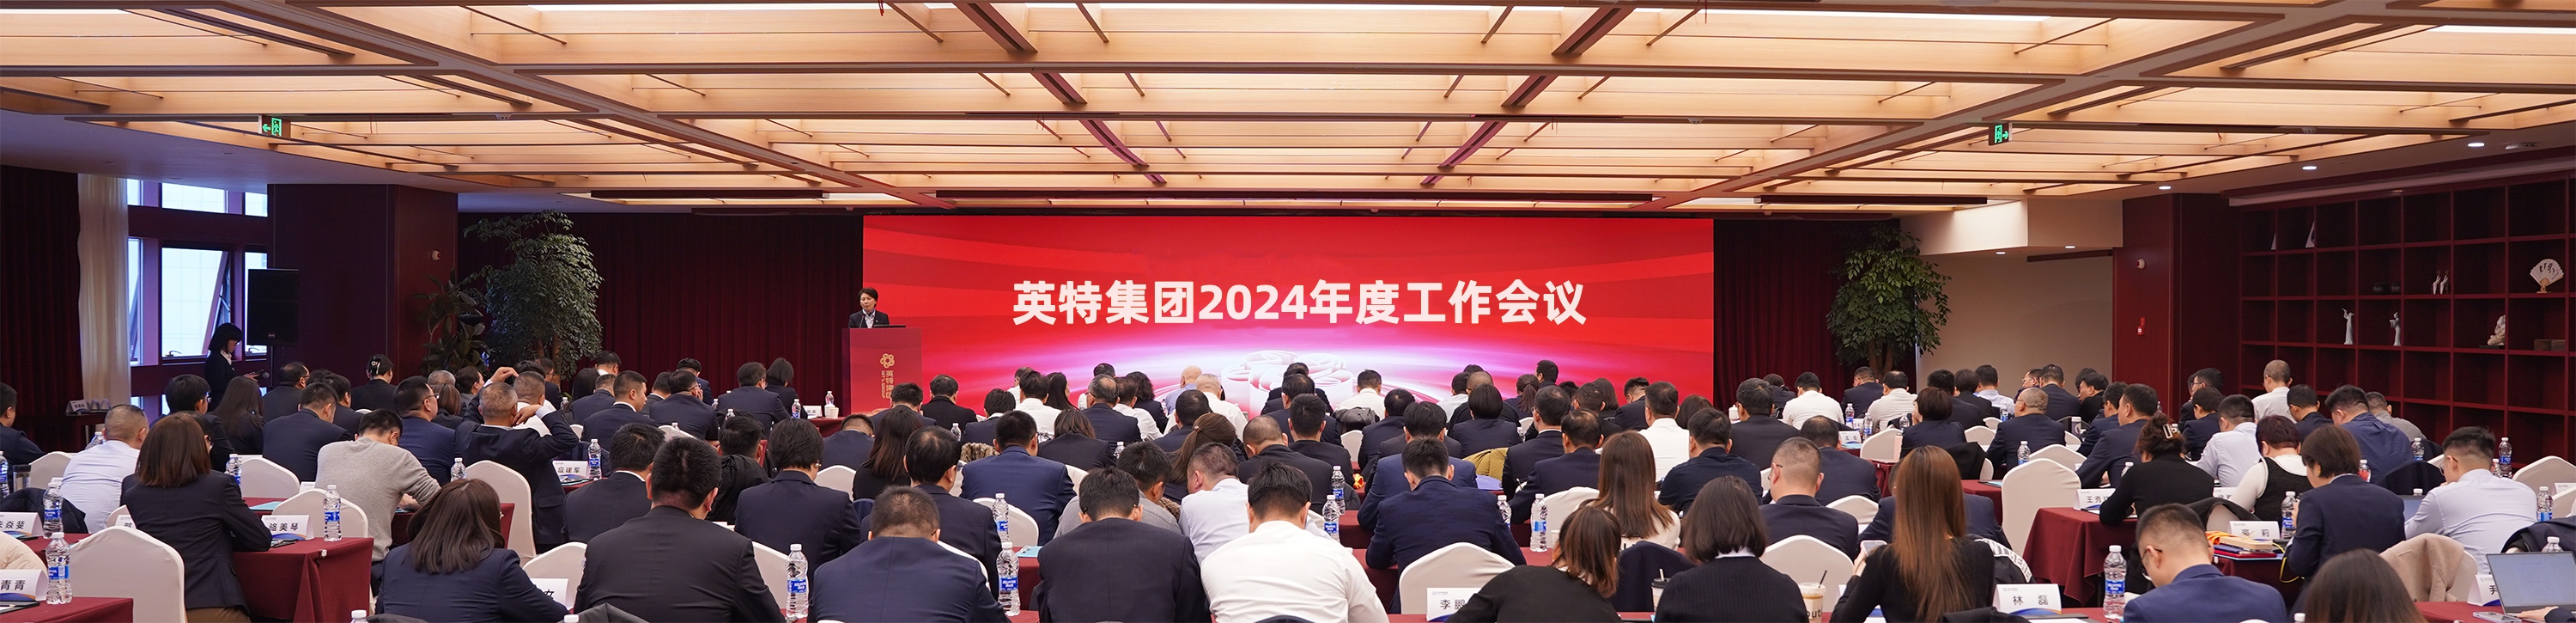 金沙娱场城app7979召开2024年度工作会议